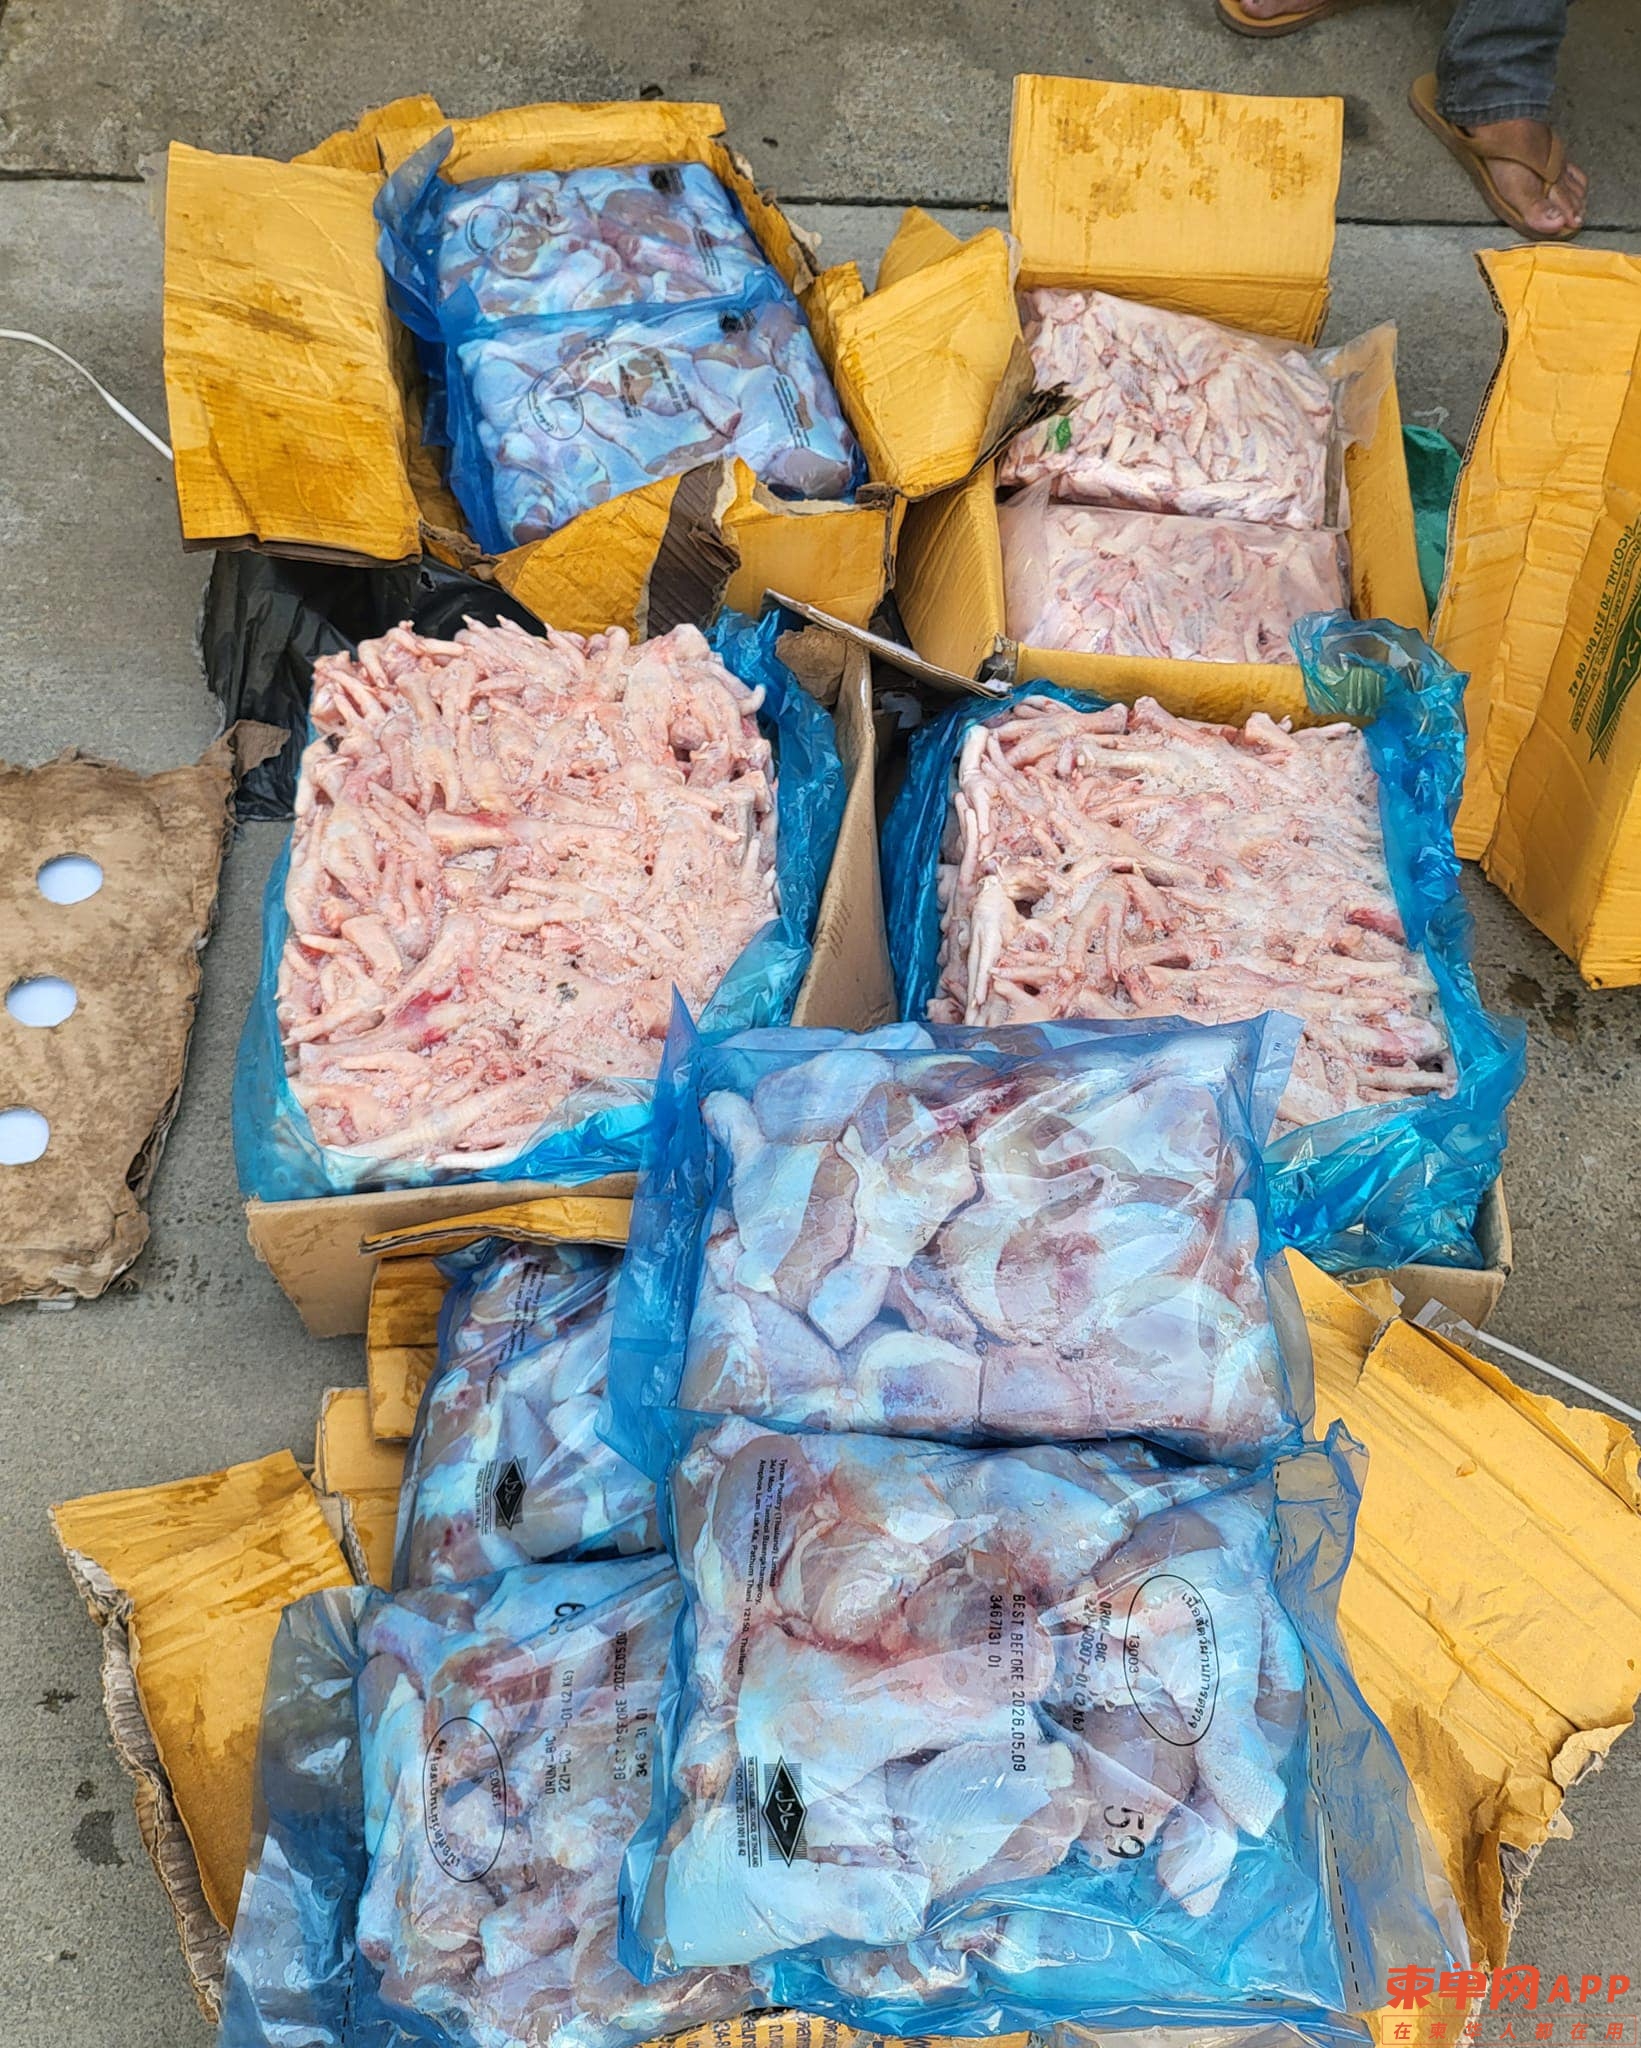 沙南哥市场查获近900公斤冷冻肉